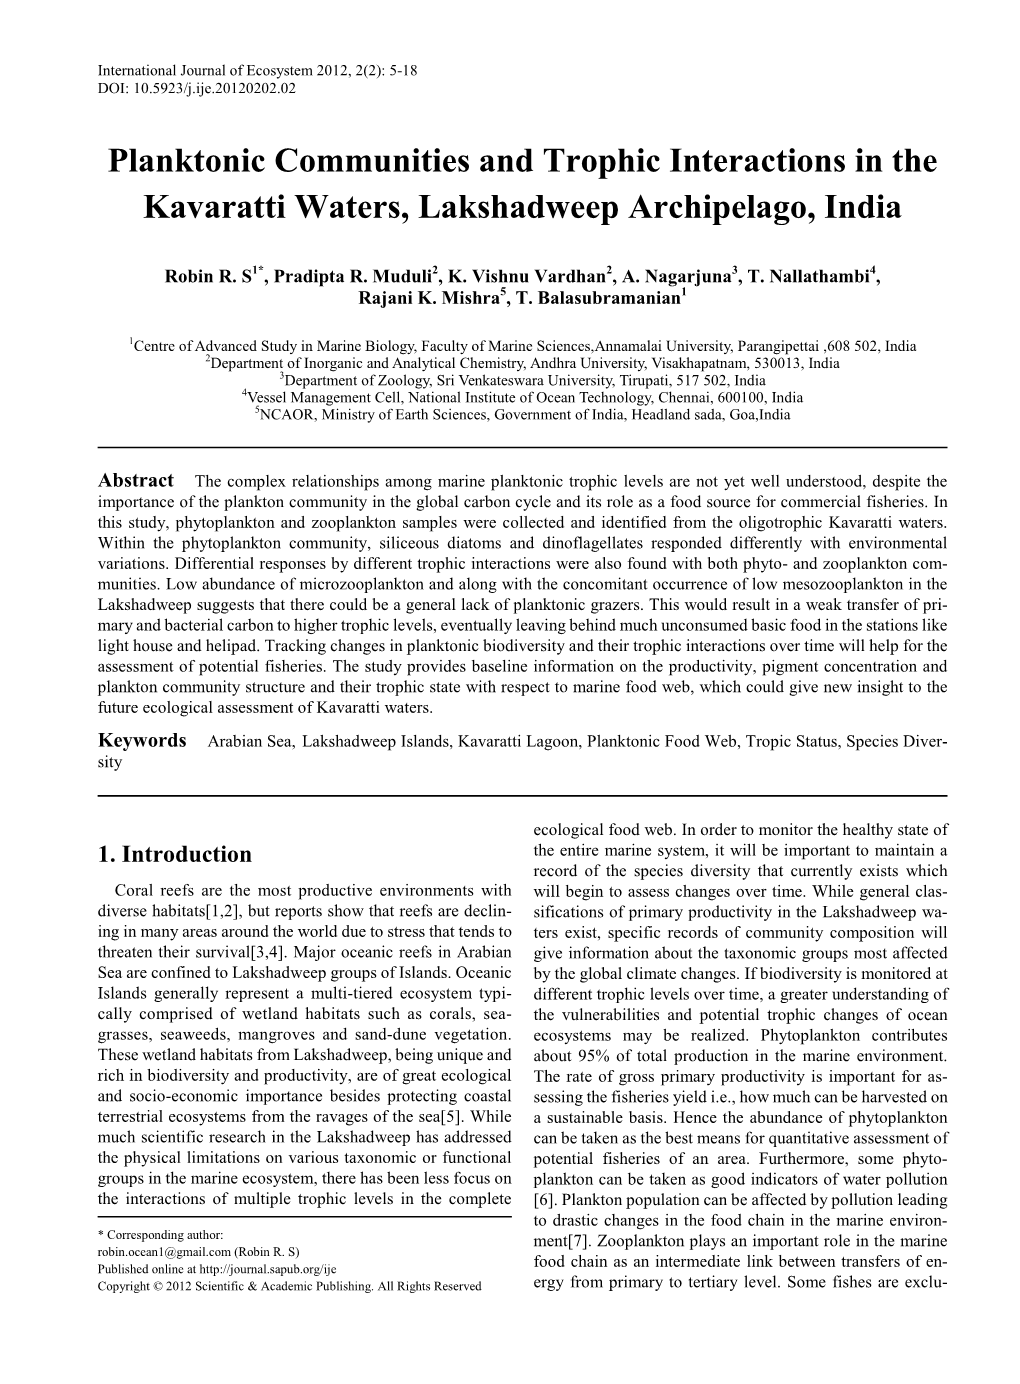 Lakshadweep Islands, Kavaratti Lagoon, Planktonic Food Web, Tropic Status, Species Diversity